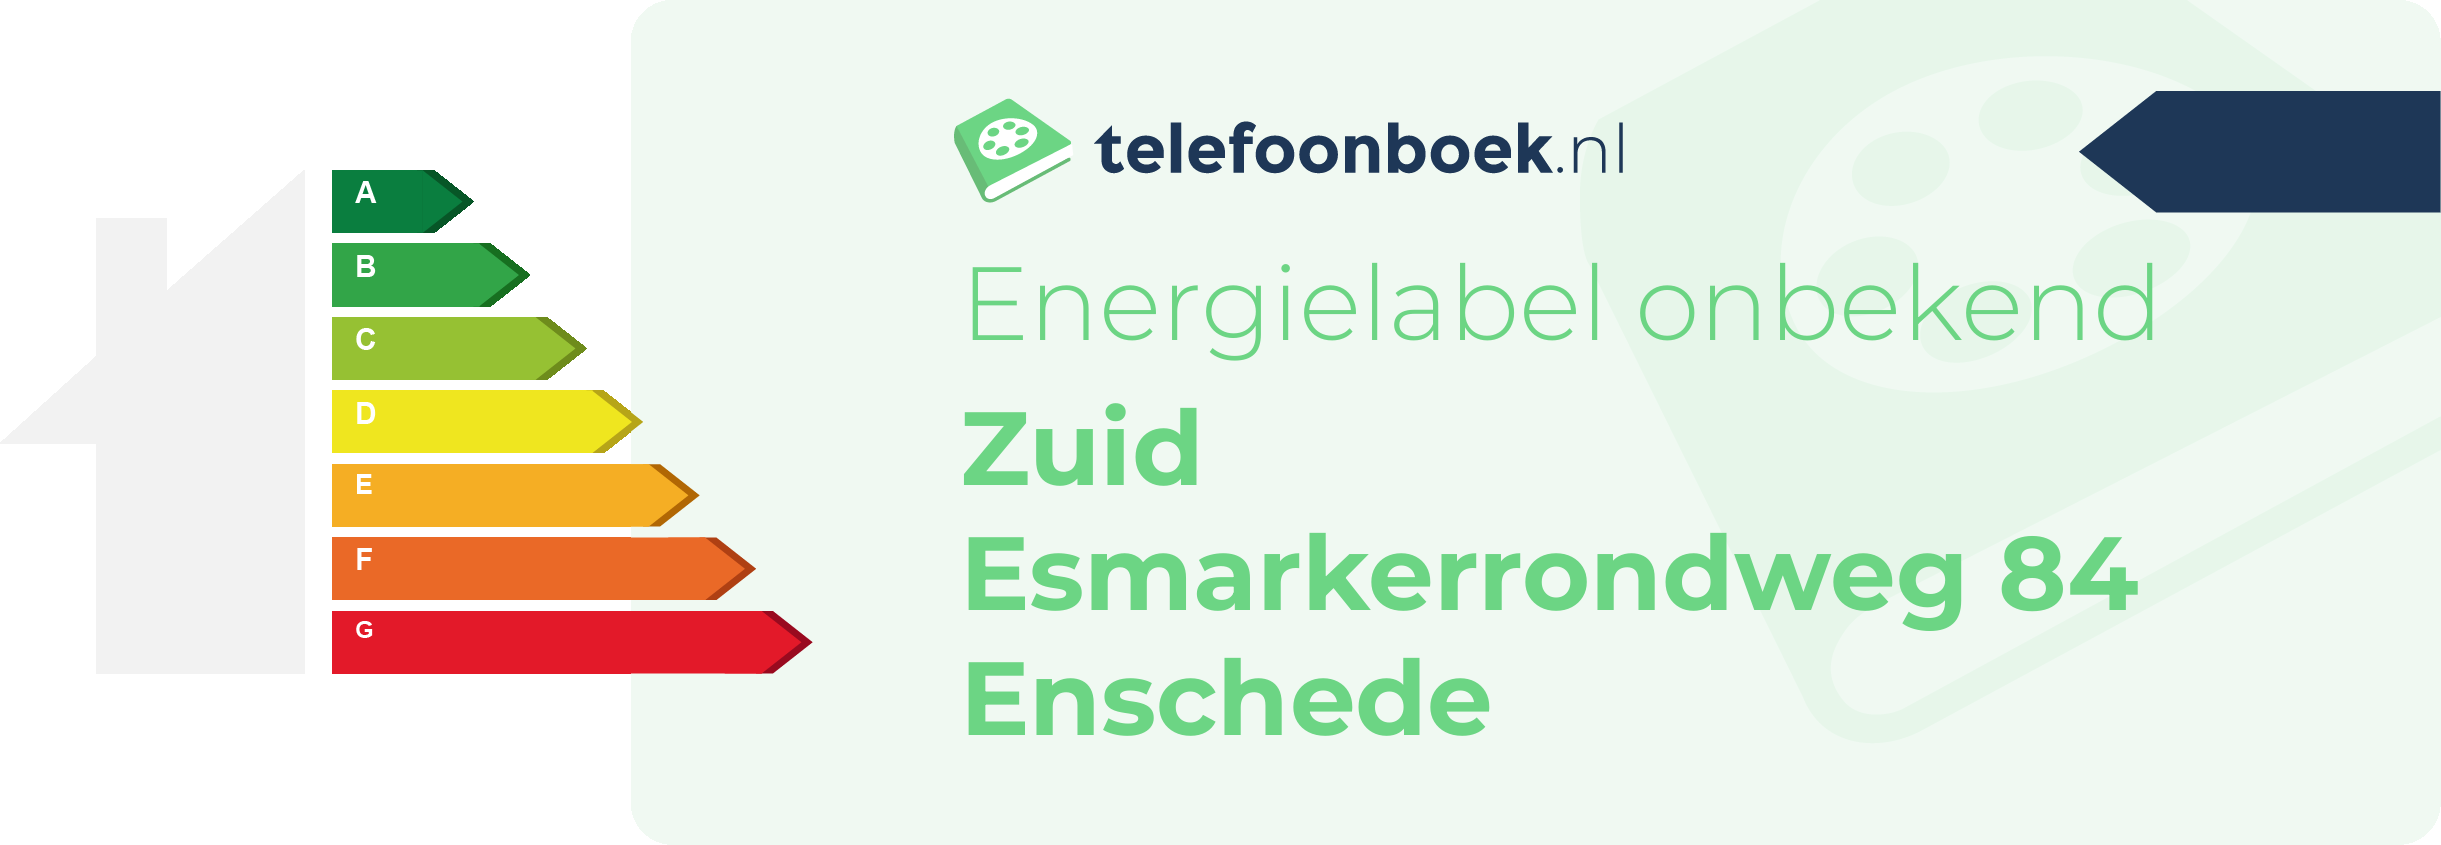 Energielabel Zuid Esmarkerrondweg 84 Enschede